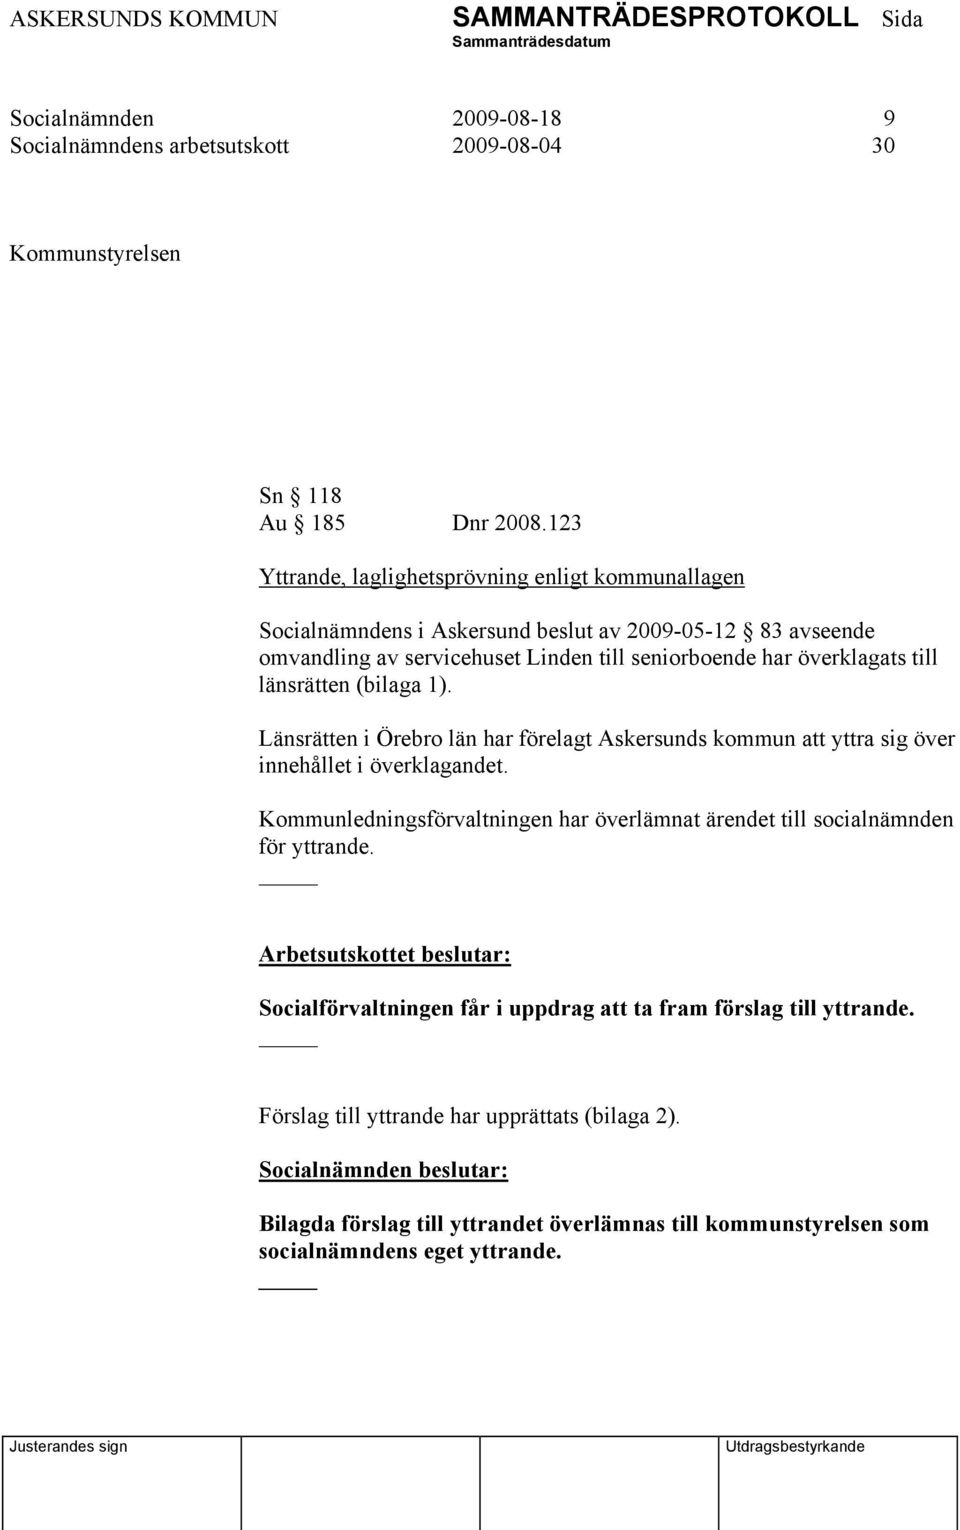 länsrätten (bilaga 1). Länsrätten i Örebro län har förelagt Askersunds kommun att yttra sig över innehållet i överklagandet.